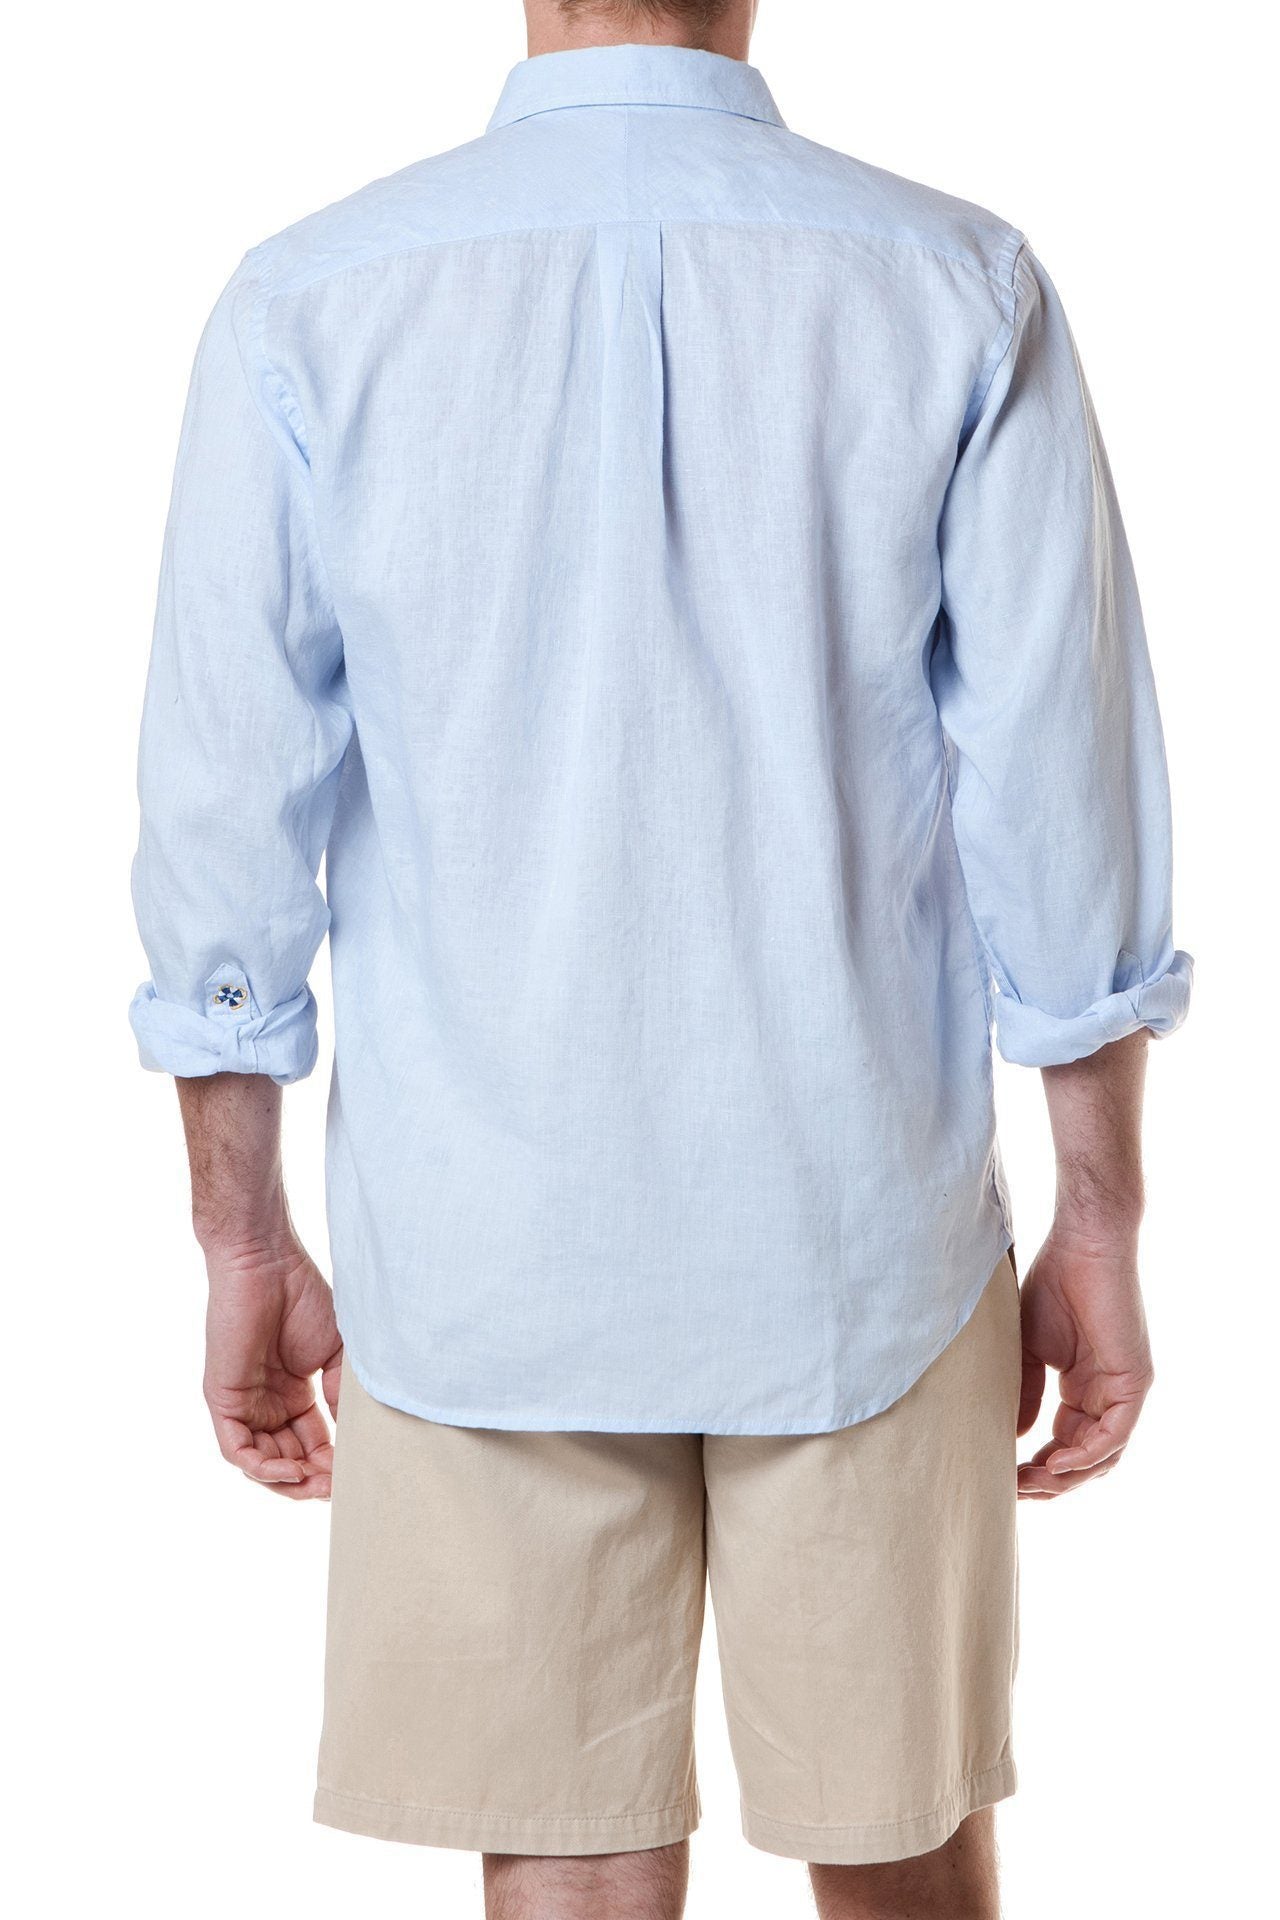 Chase Shirt Powder Blue Linen - MENS SPORT SHIRTS - Castaway Nantucket Island